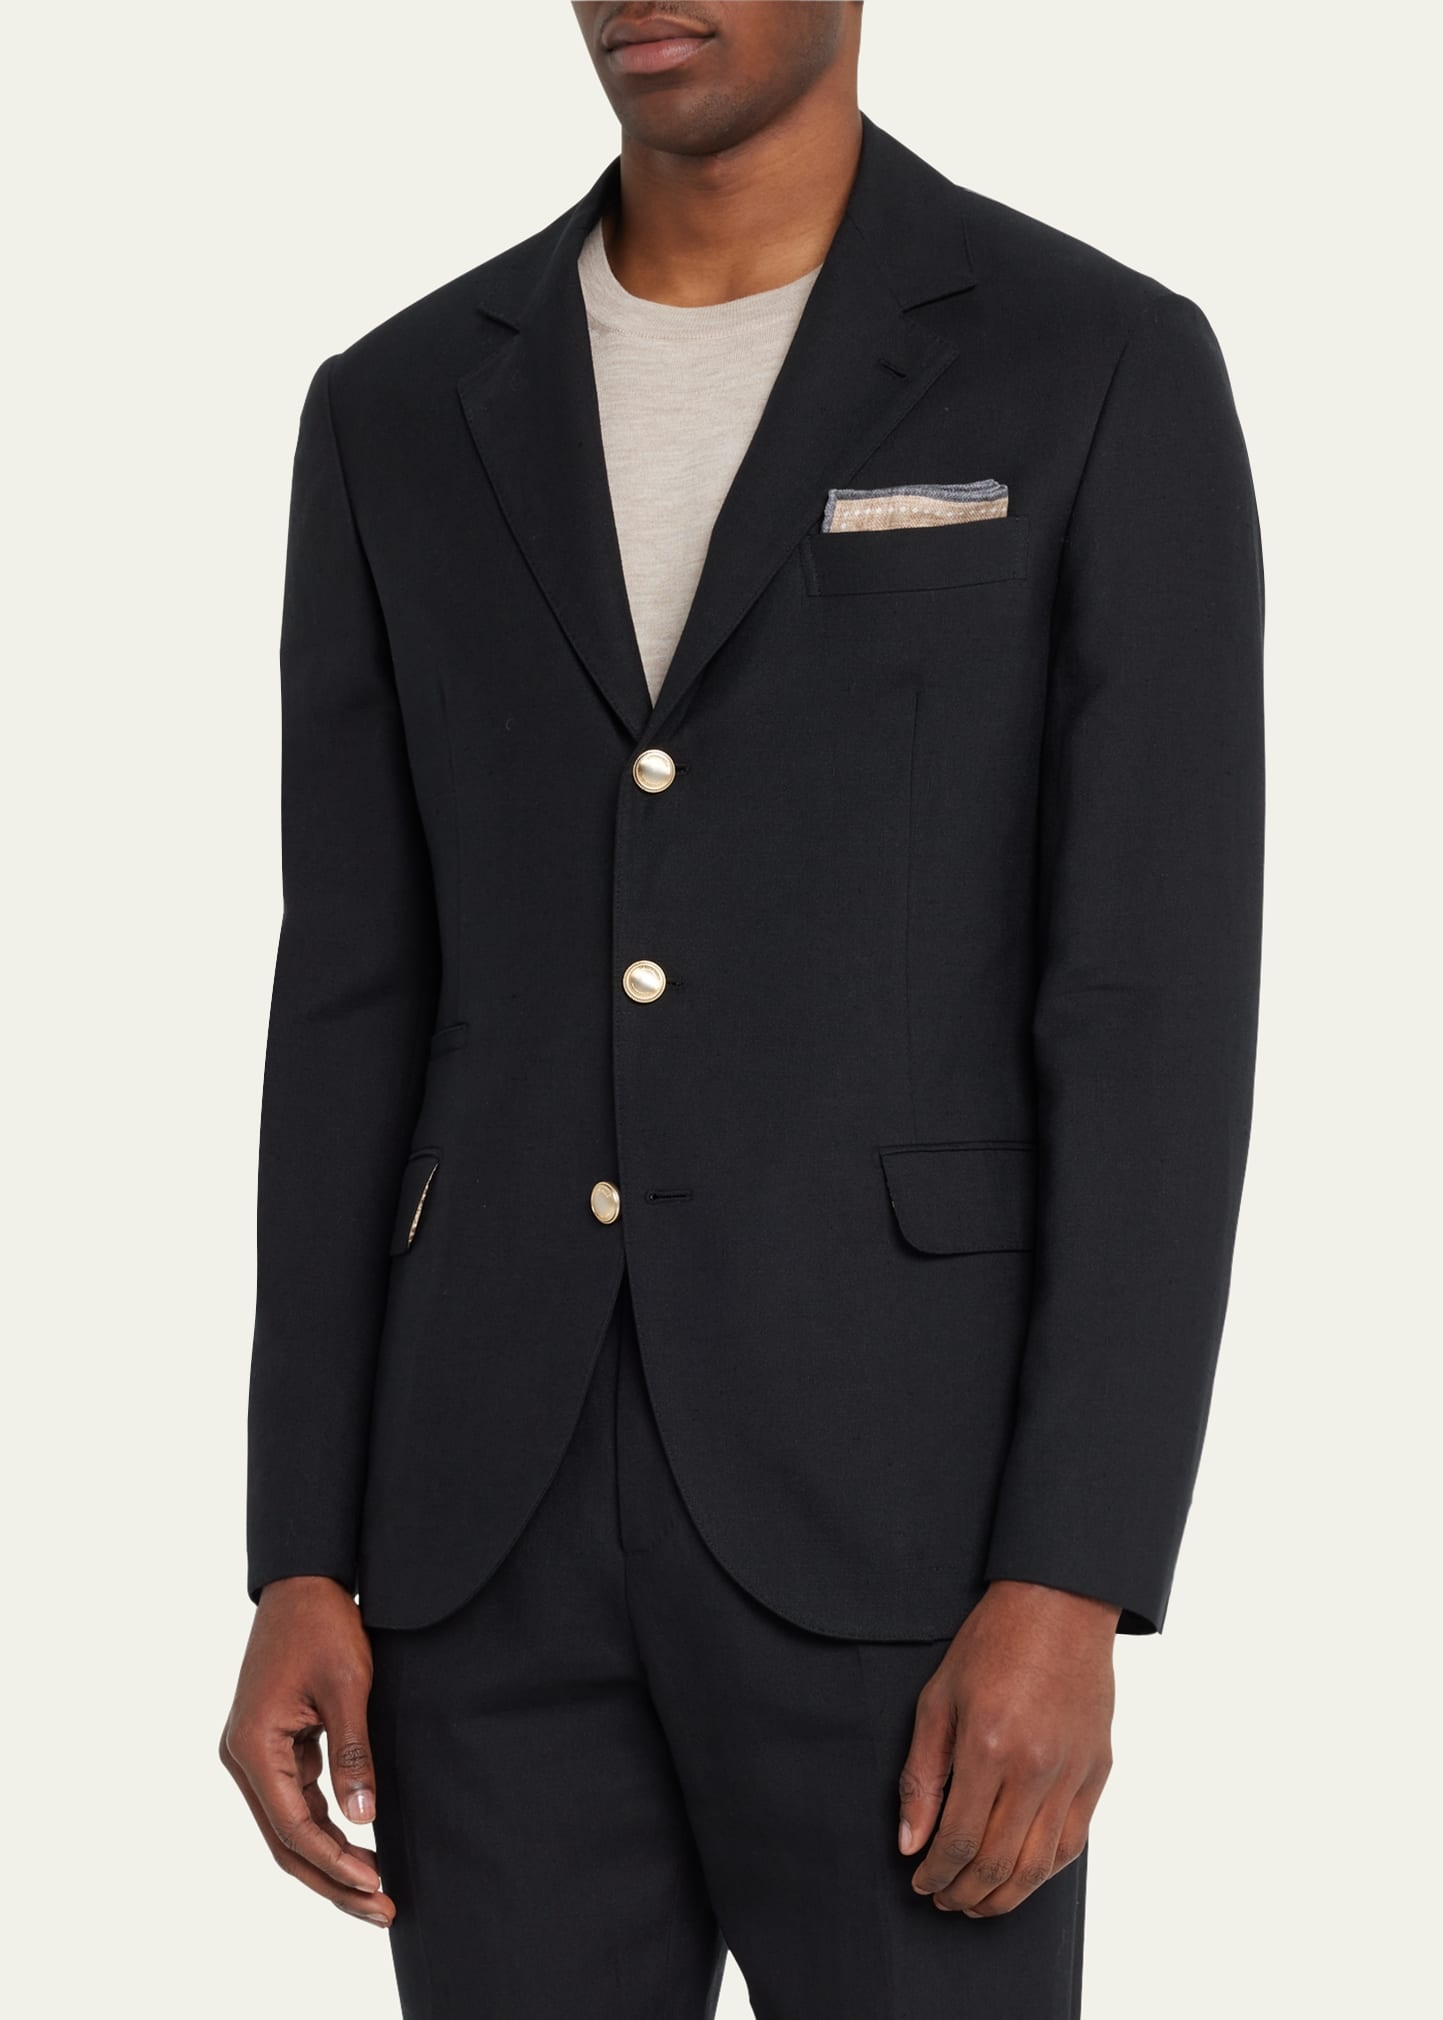 Men's Linen-Wool Solid Suit - 3